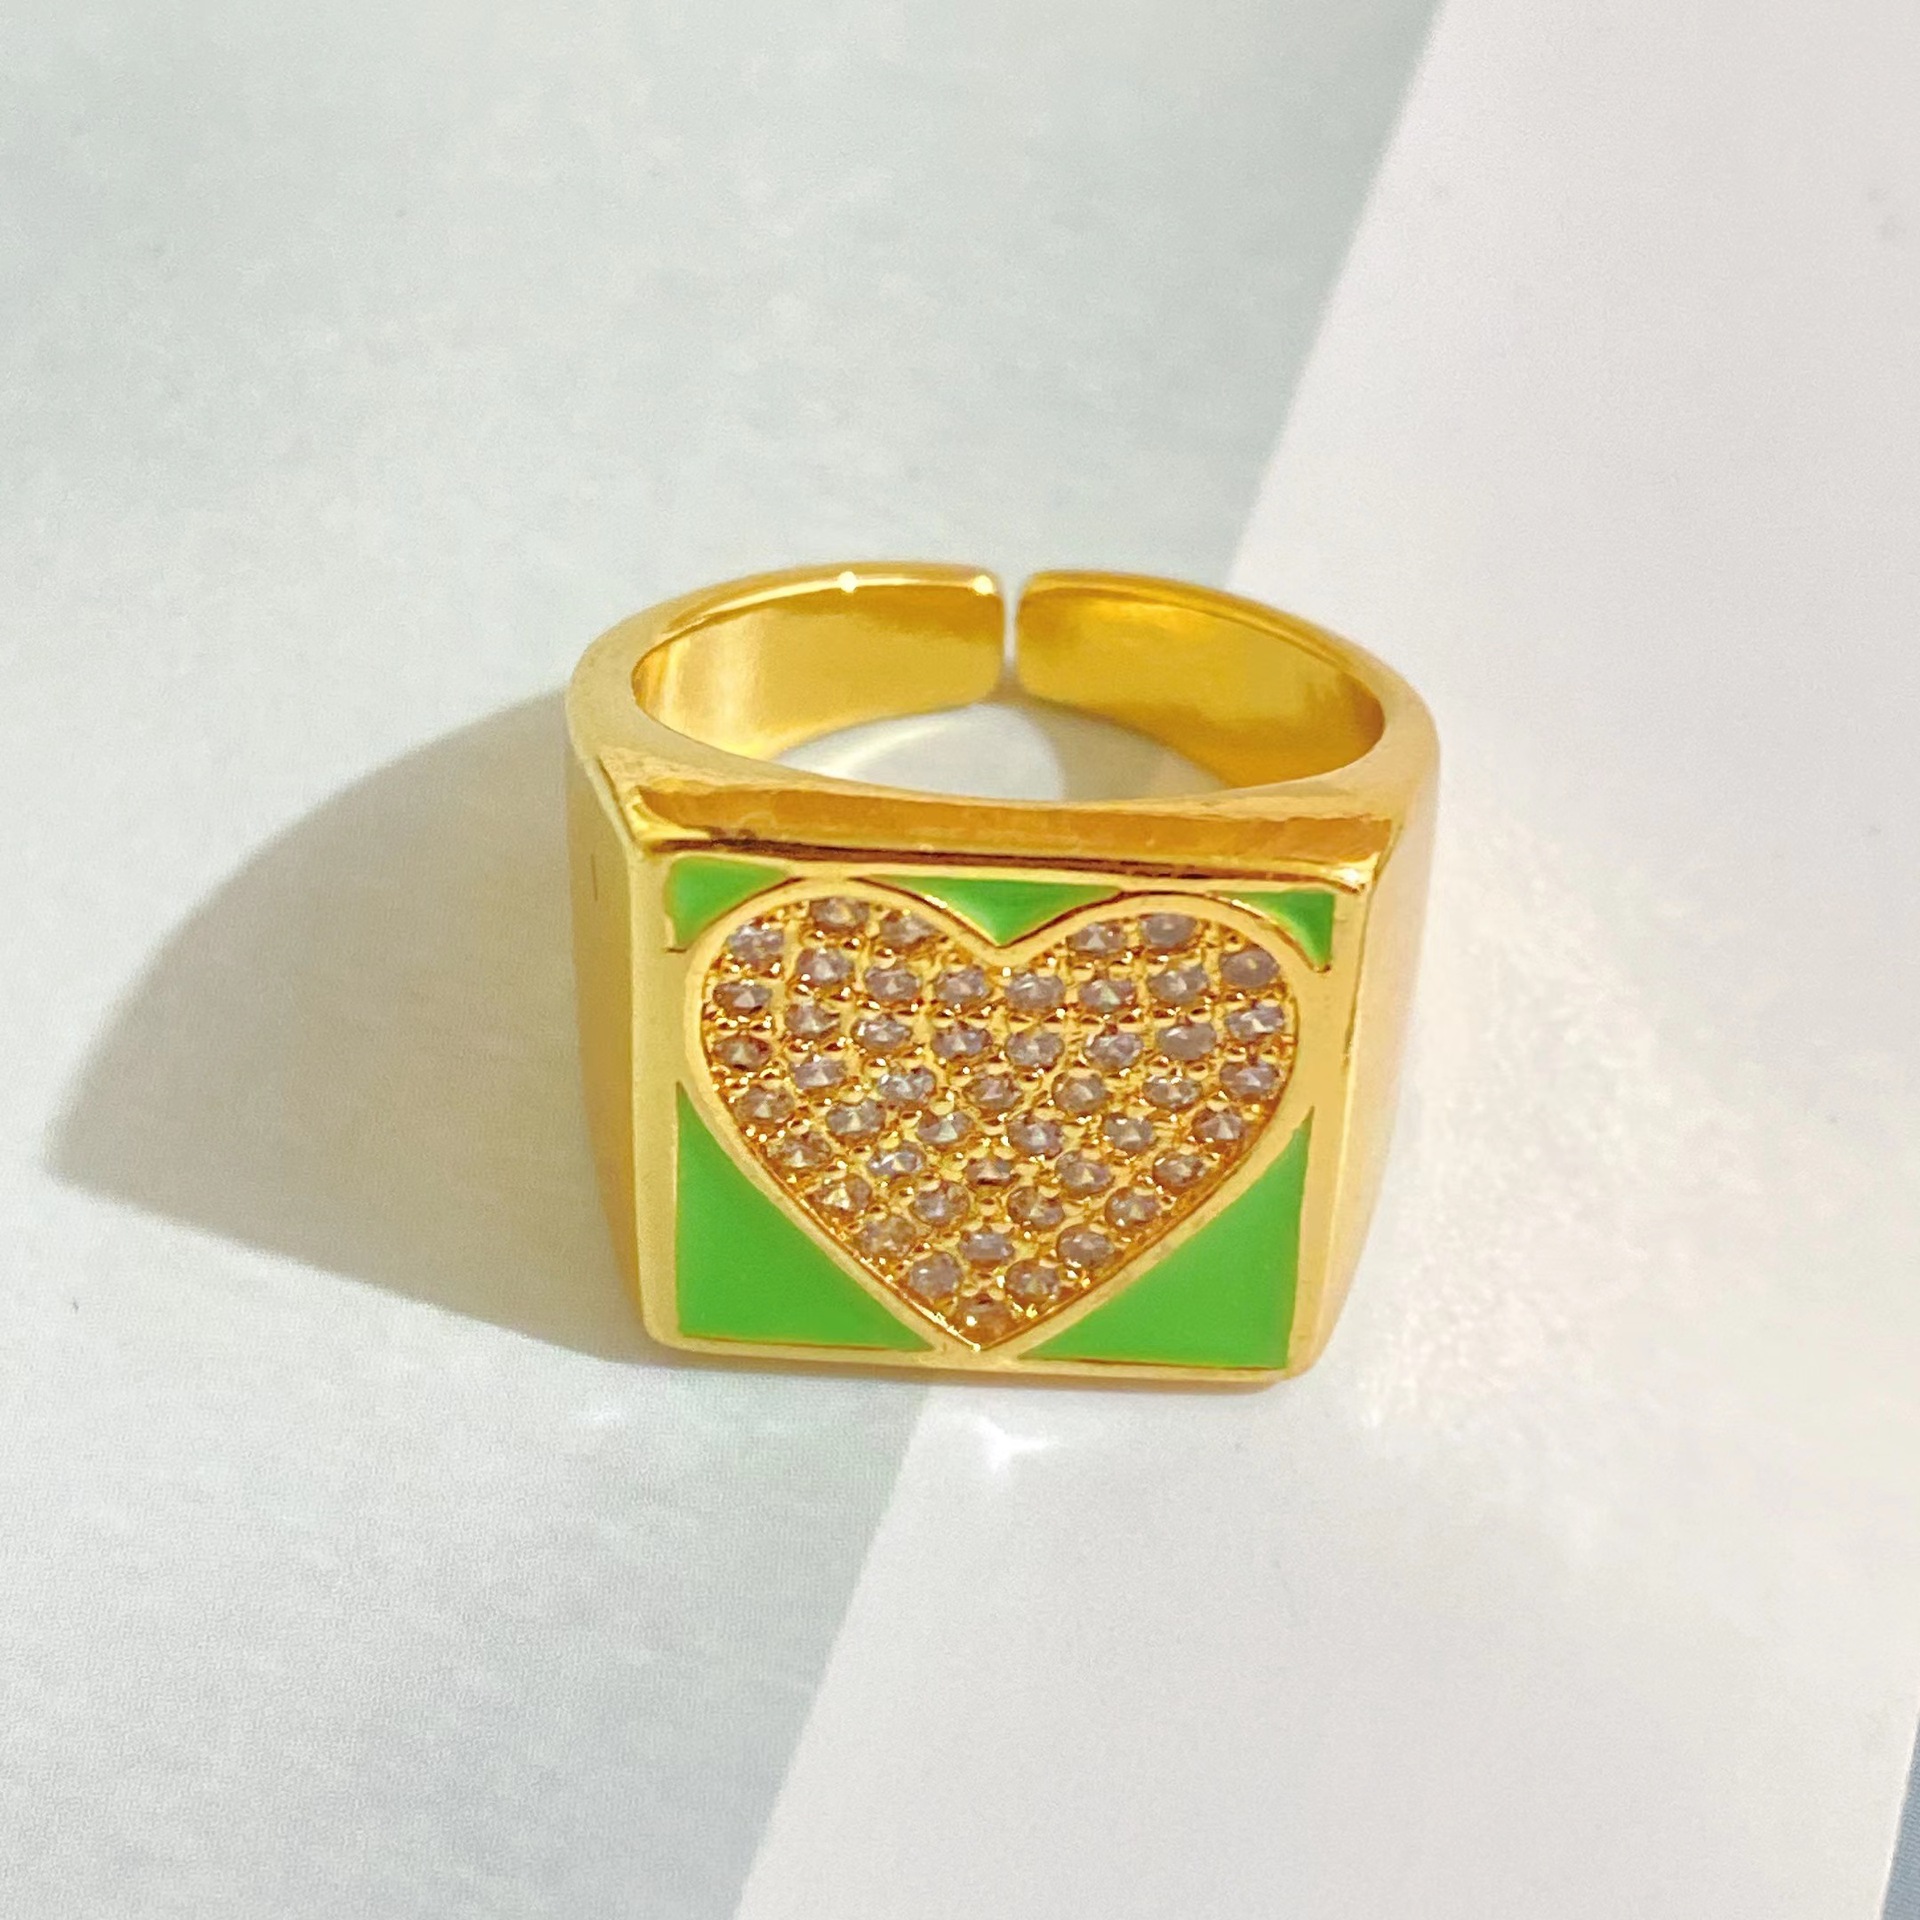 Neuer offener Ring aus 18 Karat Gold mit Herz und Mikrodiamantenpicture4